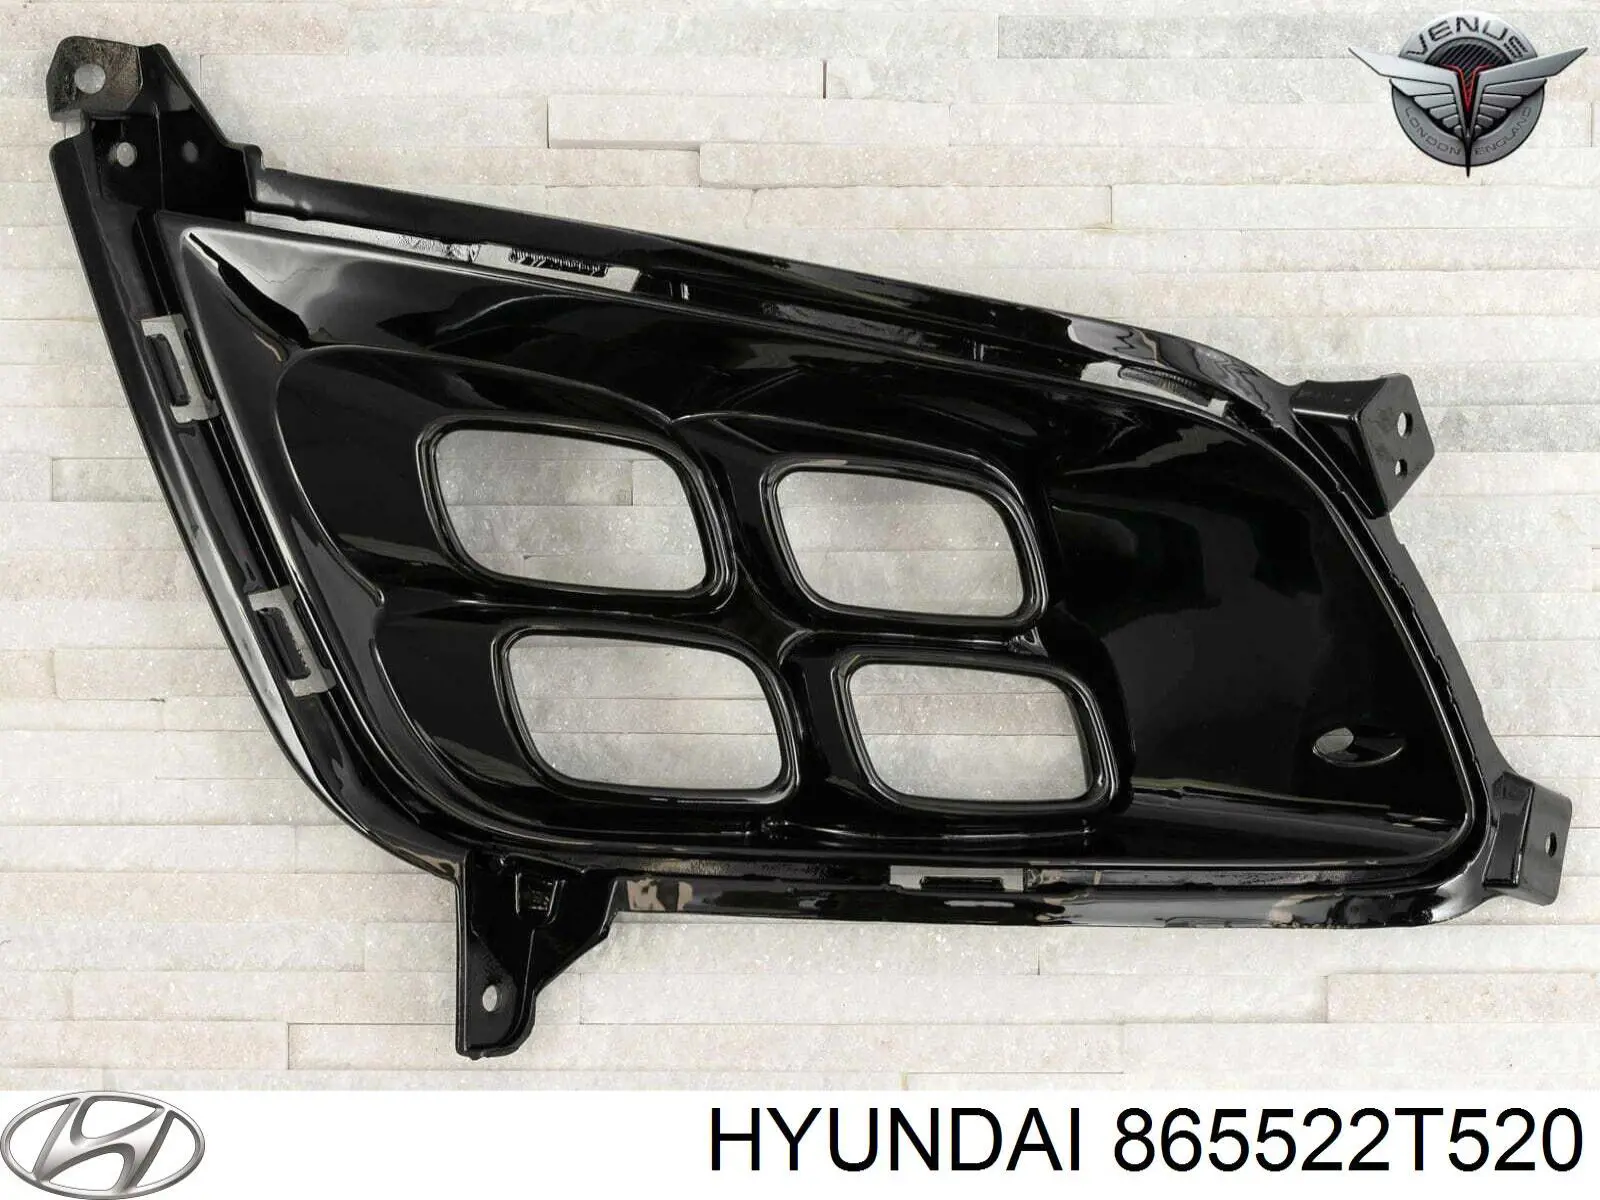 865522T520 Hyundai/Kia ободок (окантовка фары противотуманной правой)